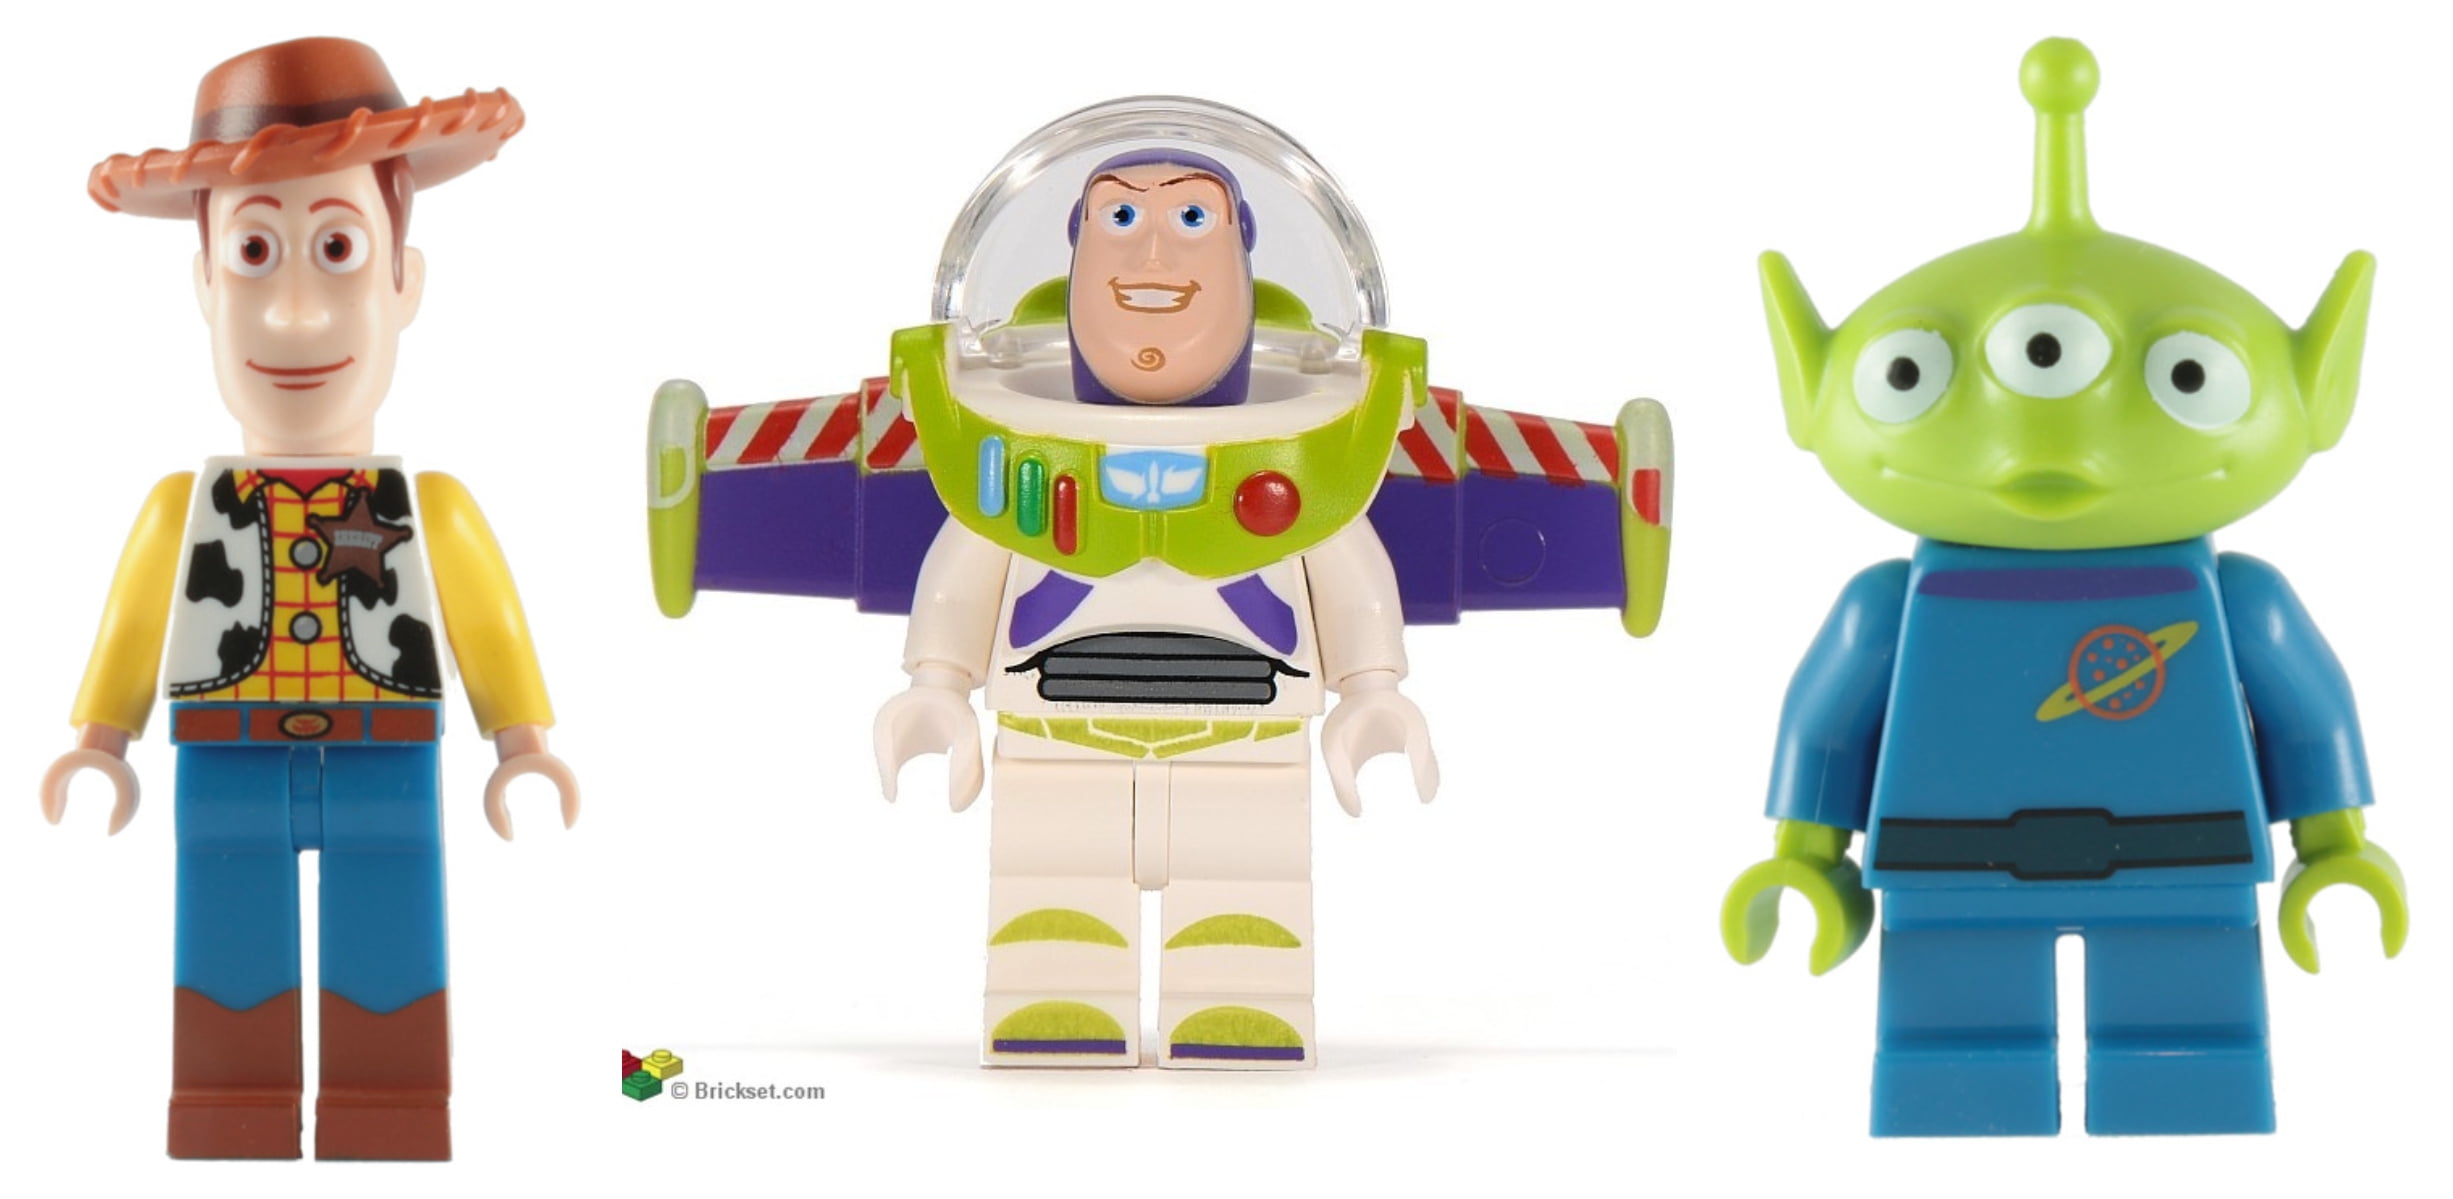 announcer festspil klinge 3 Lego Authentic Disney Woody Buzz Alien Minifigures Toy Story - Walmart.com